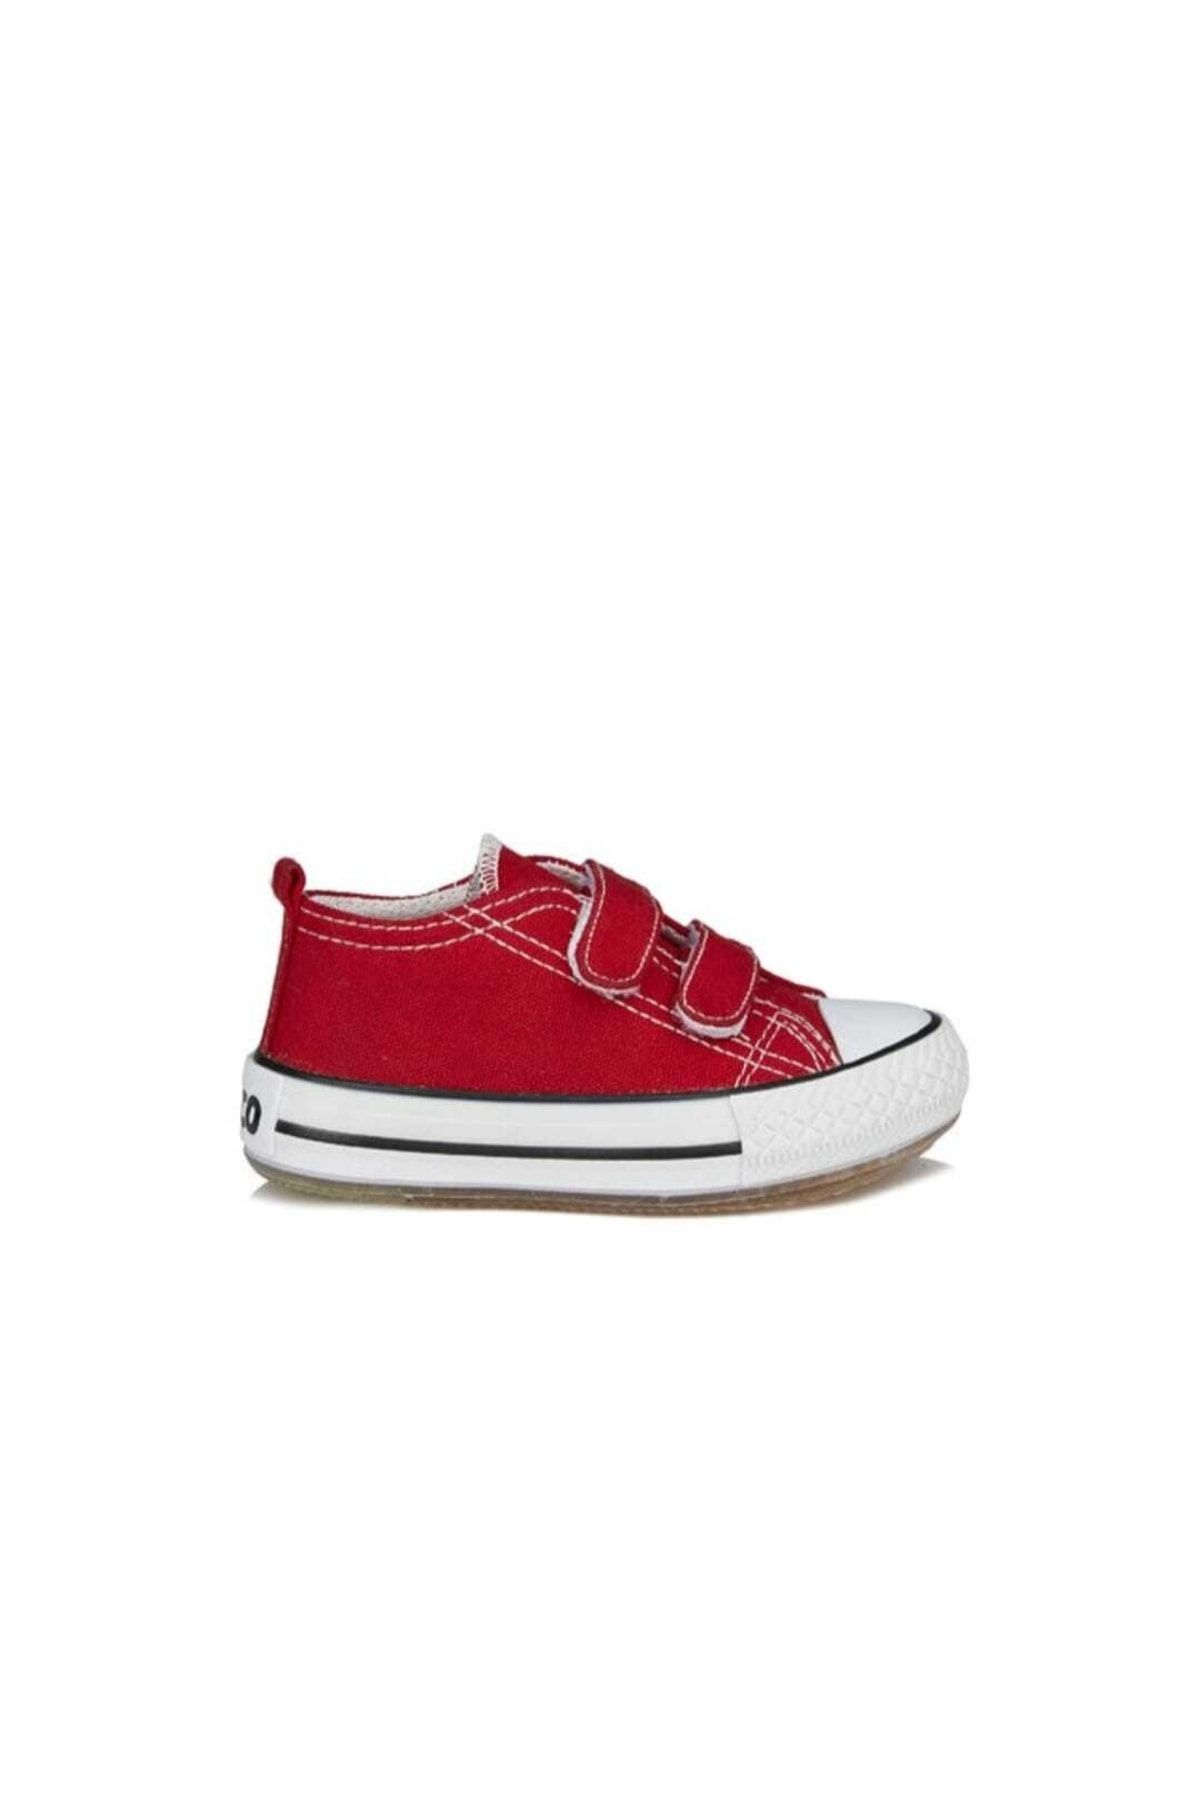 Vicco Pino Unisex Çocuk Kırmızı Patik Işıklı Keten Ayakkabı